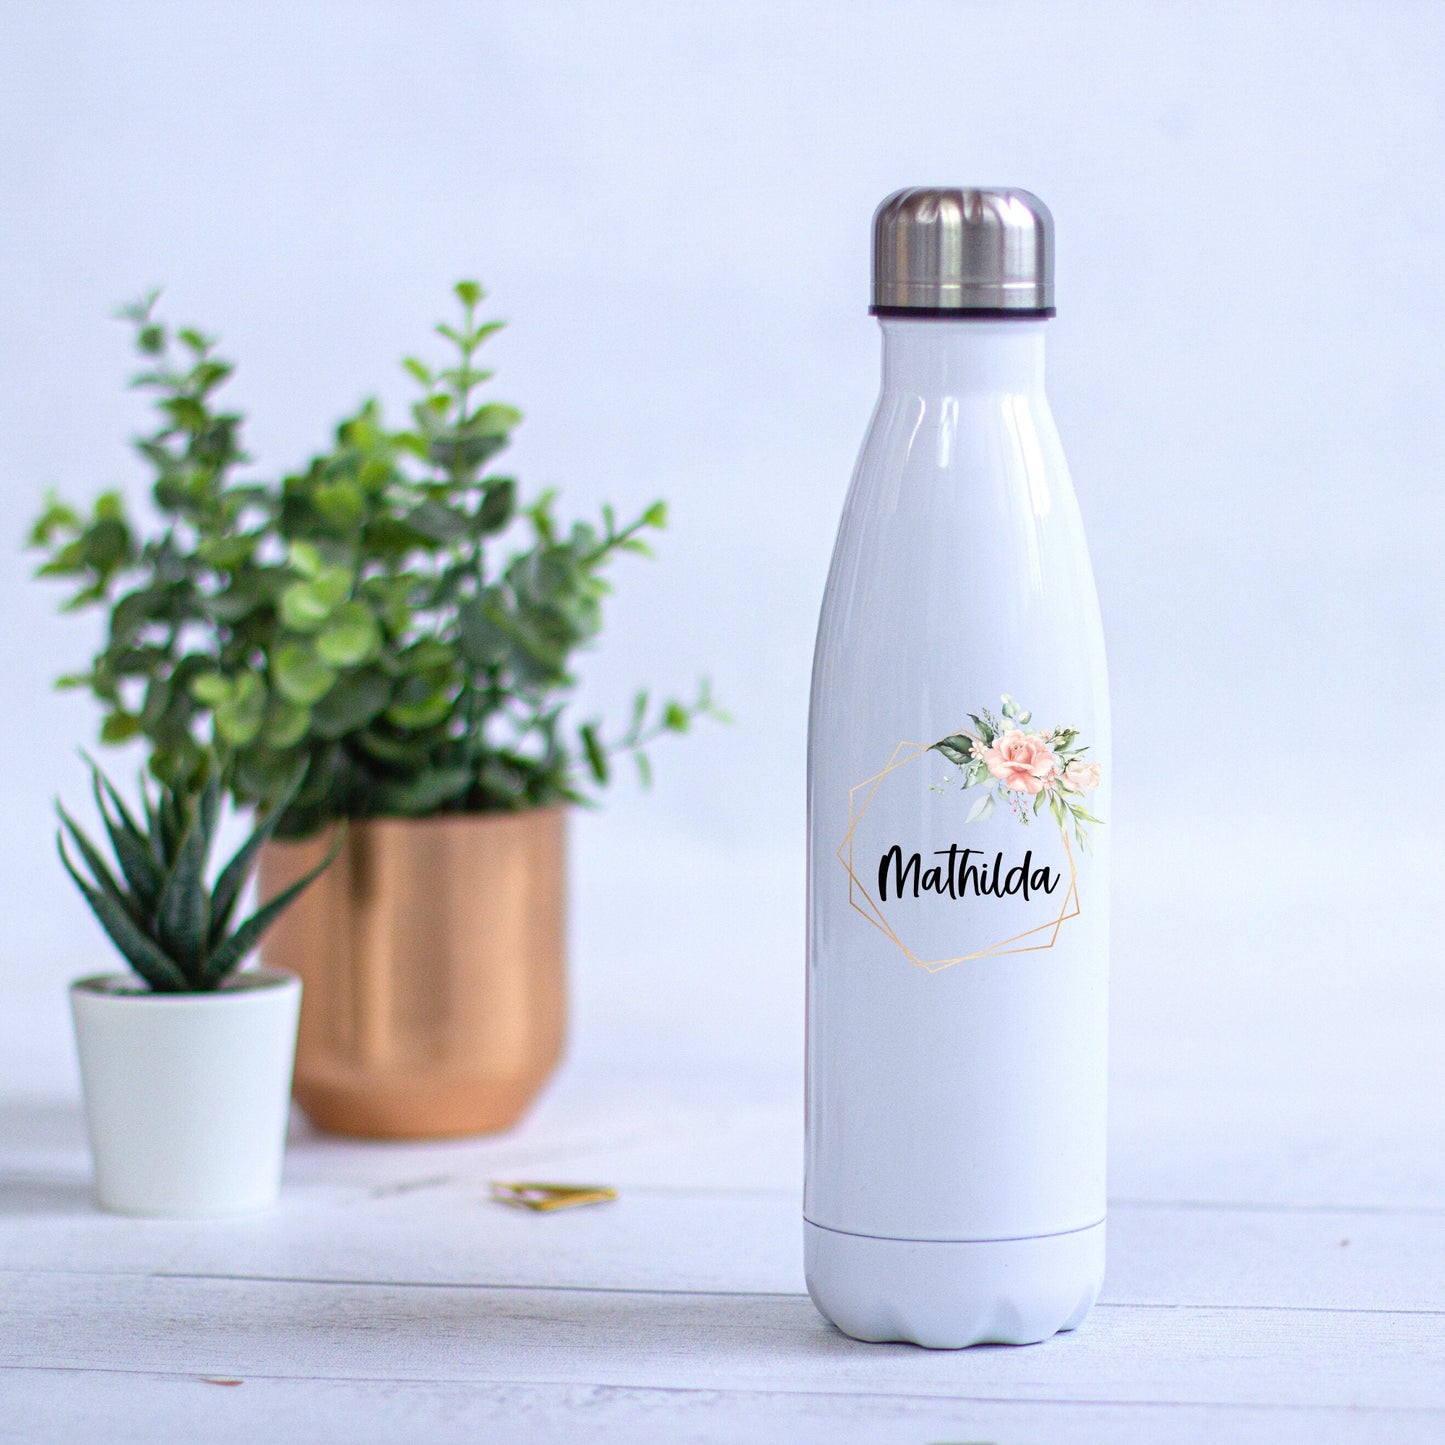 Thermoskanne Trinkflasche Edelstahl personalisiert Blumenrahmen Gold - Design PEONY - tolle Geschenkidee für Sie!